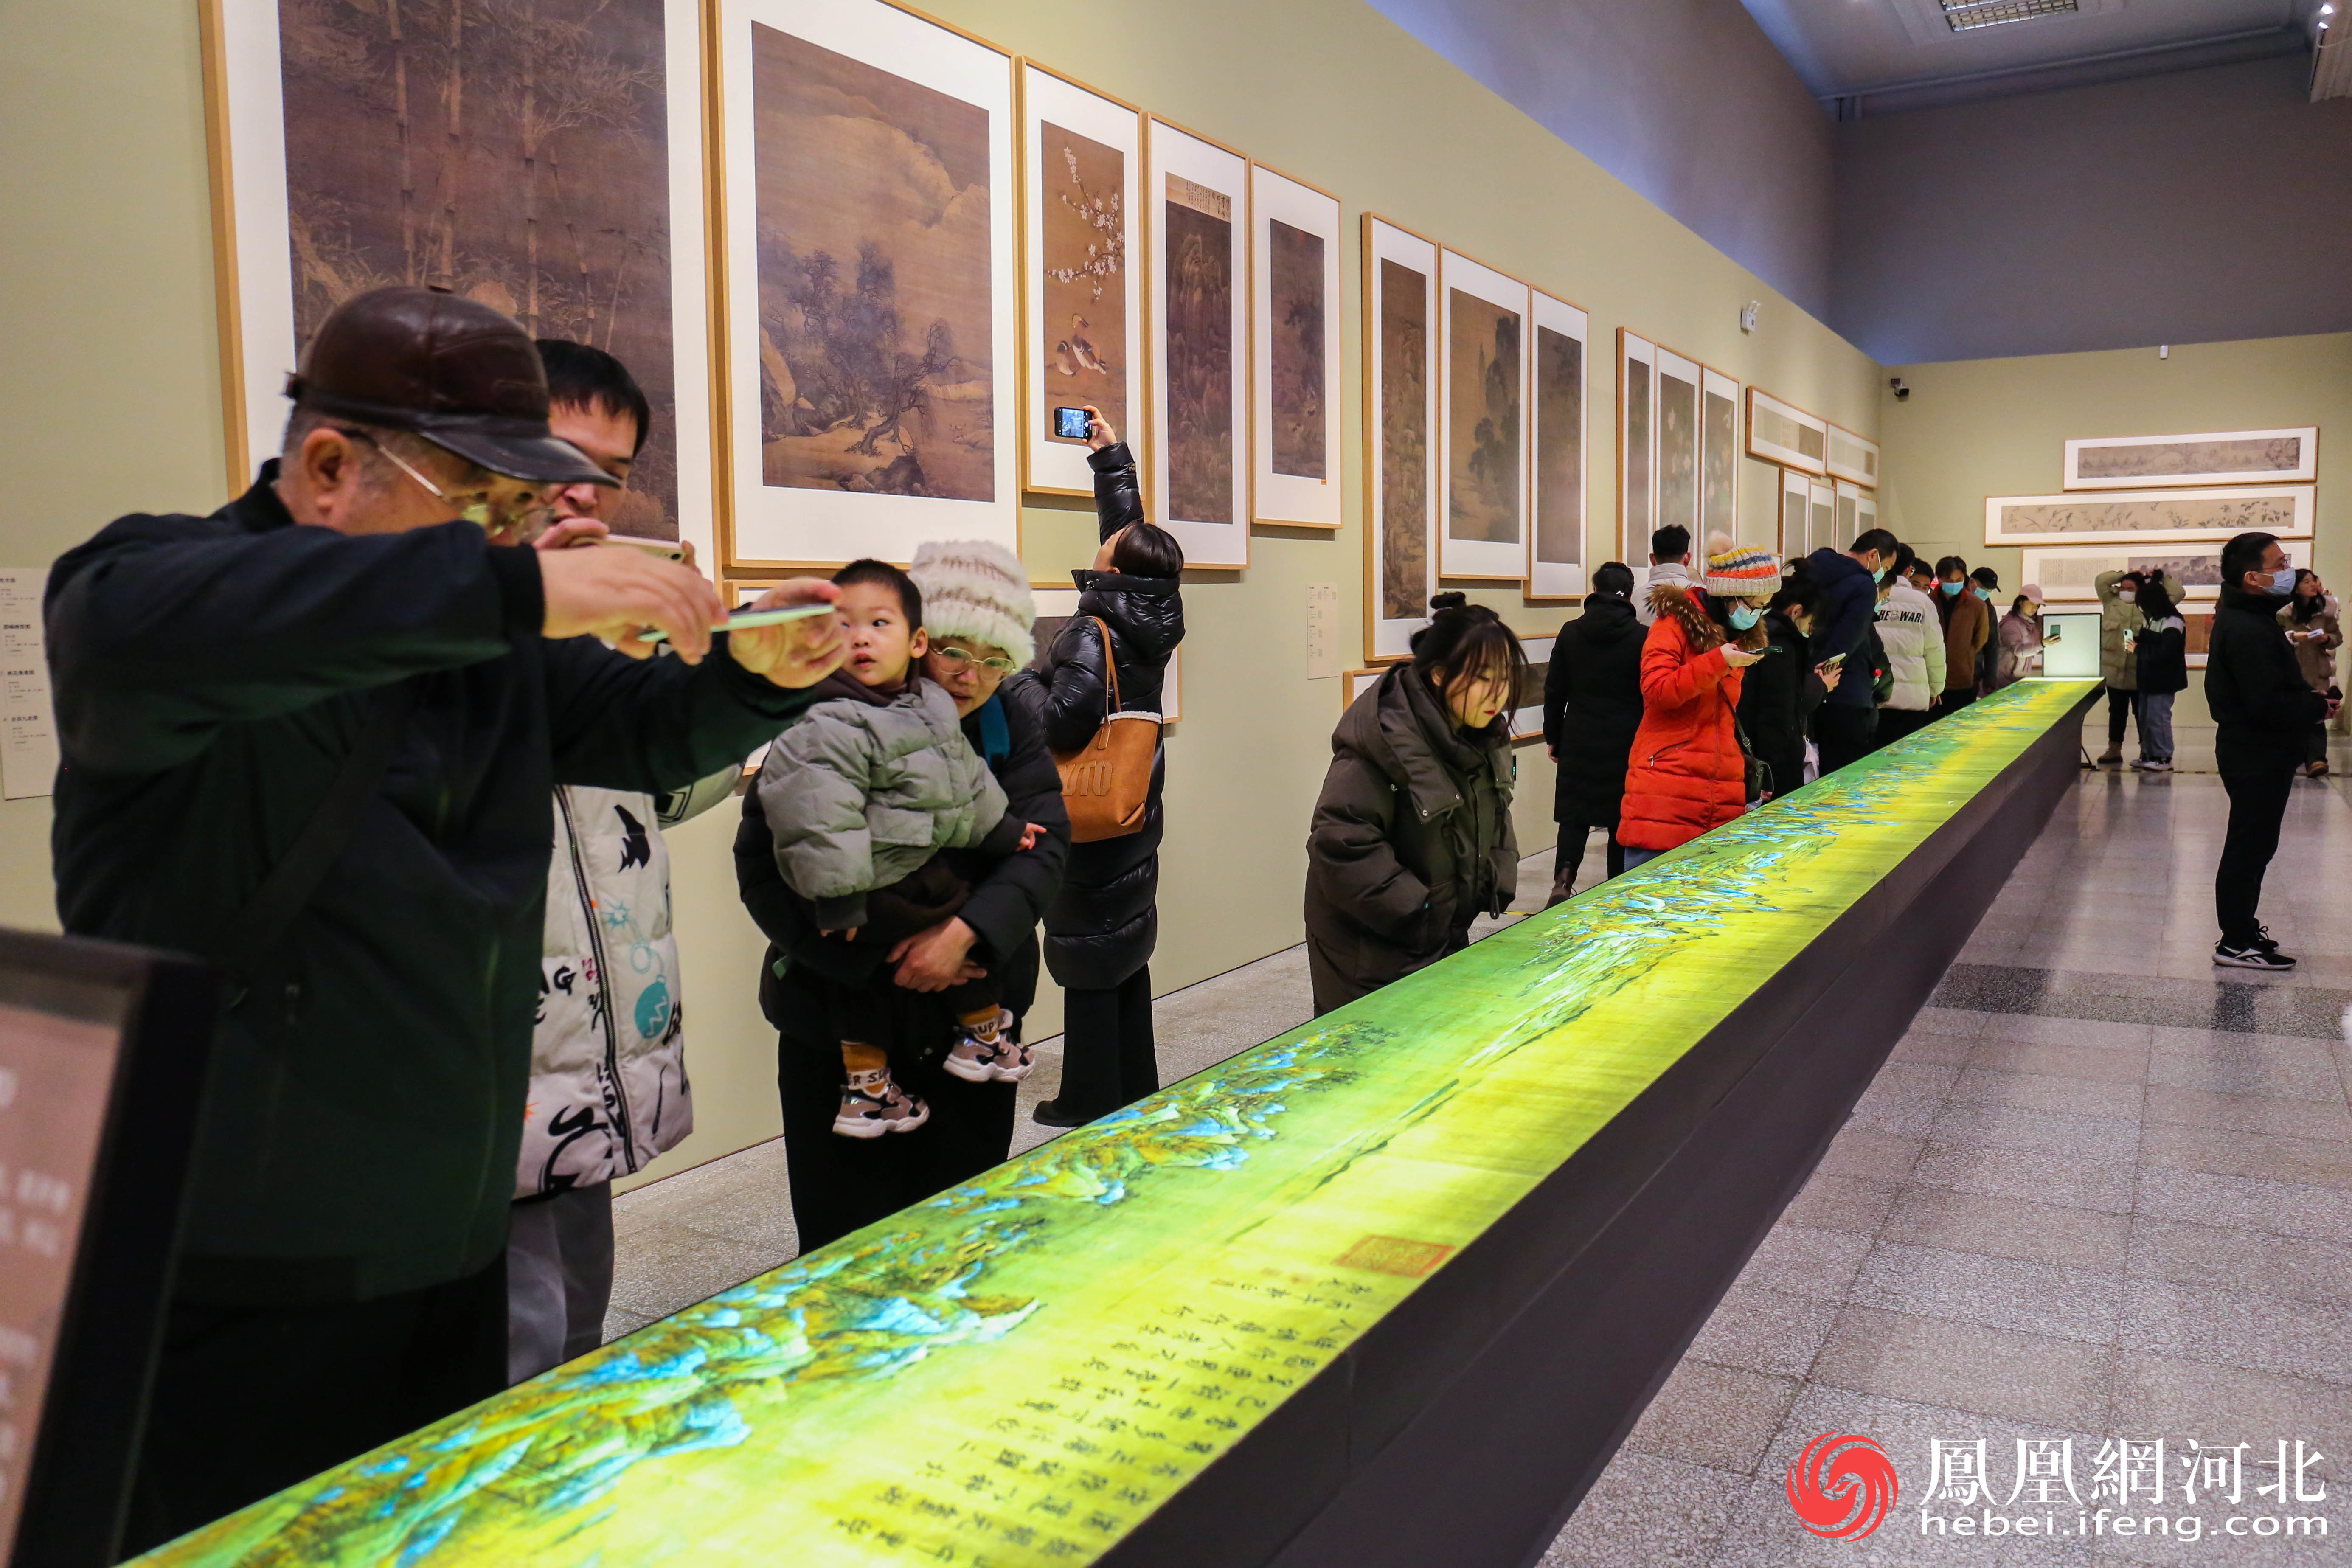 《千里江山图》围满了观众弯腰凑近观看画作细节，拍照欣赏。